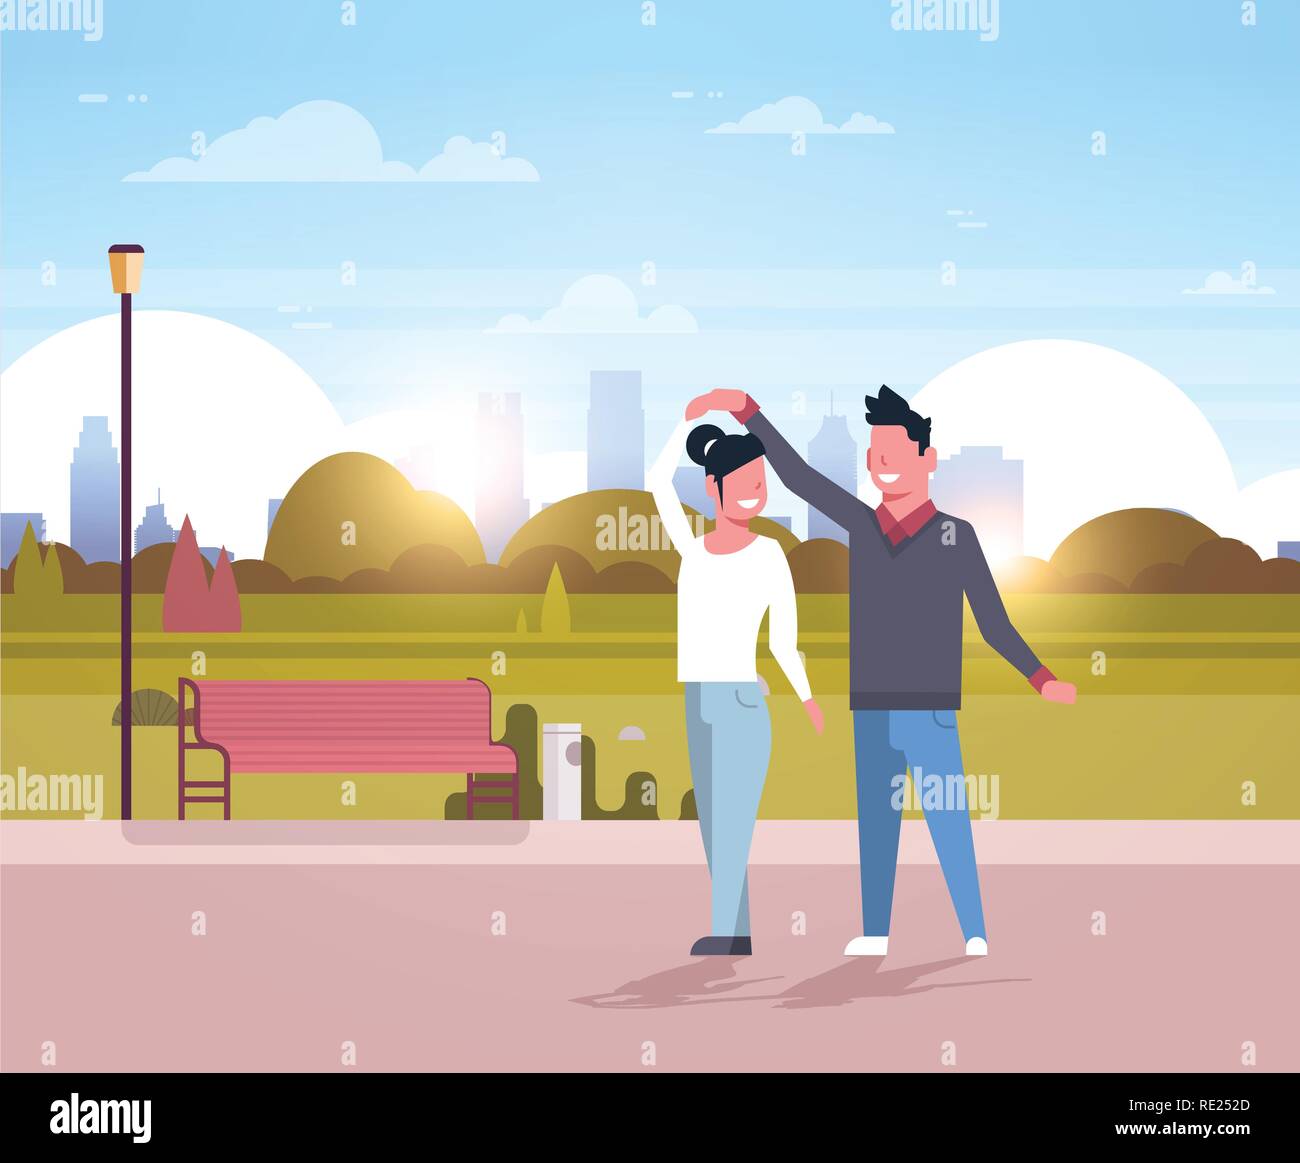 Paar tanzen zusammen fröhliche Mann Frau Spaß Stadt städtischen Park Stadtbild Hintergrund glücklich Liebhaber weiblichen Zeichentrickfiguren männlichen voller Länge flach Stock Vektor